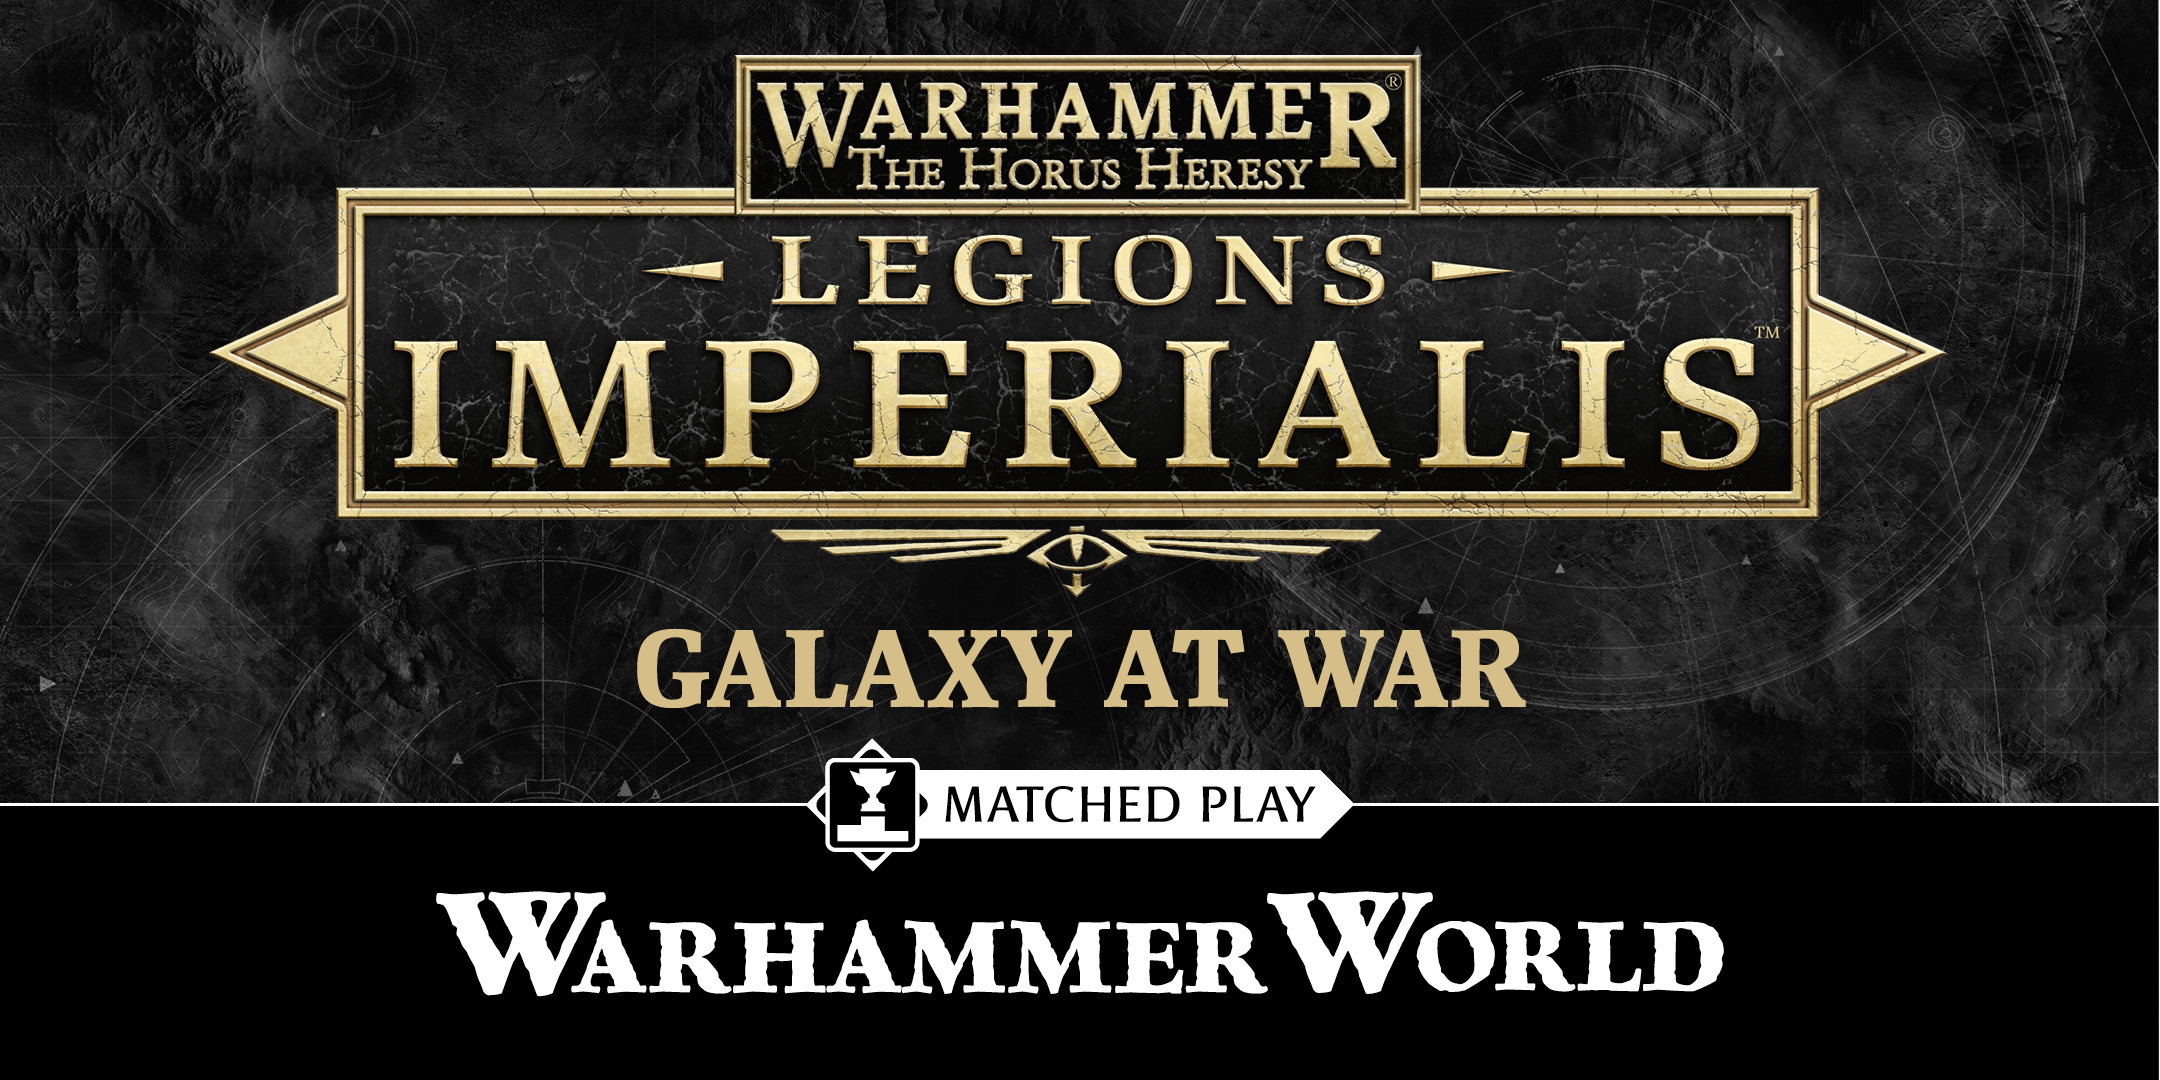 Legions Imperialis: Galaxy at War